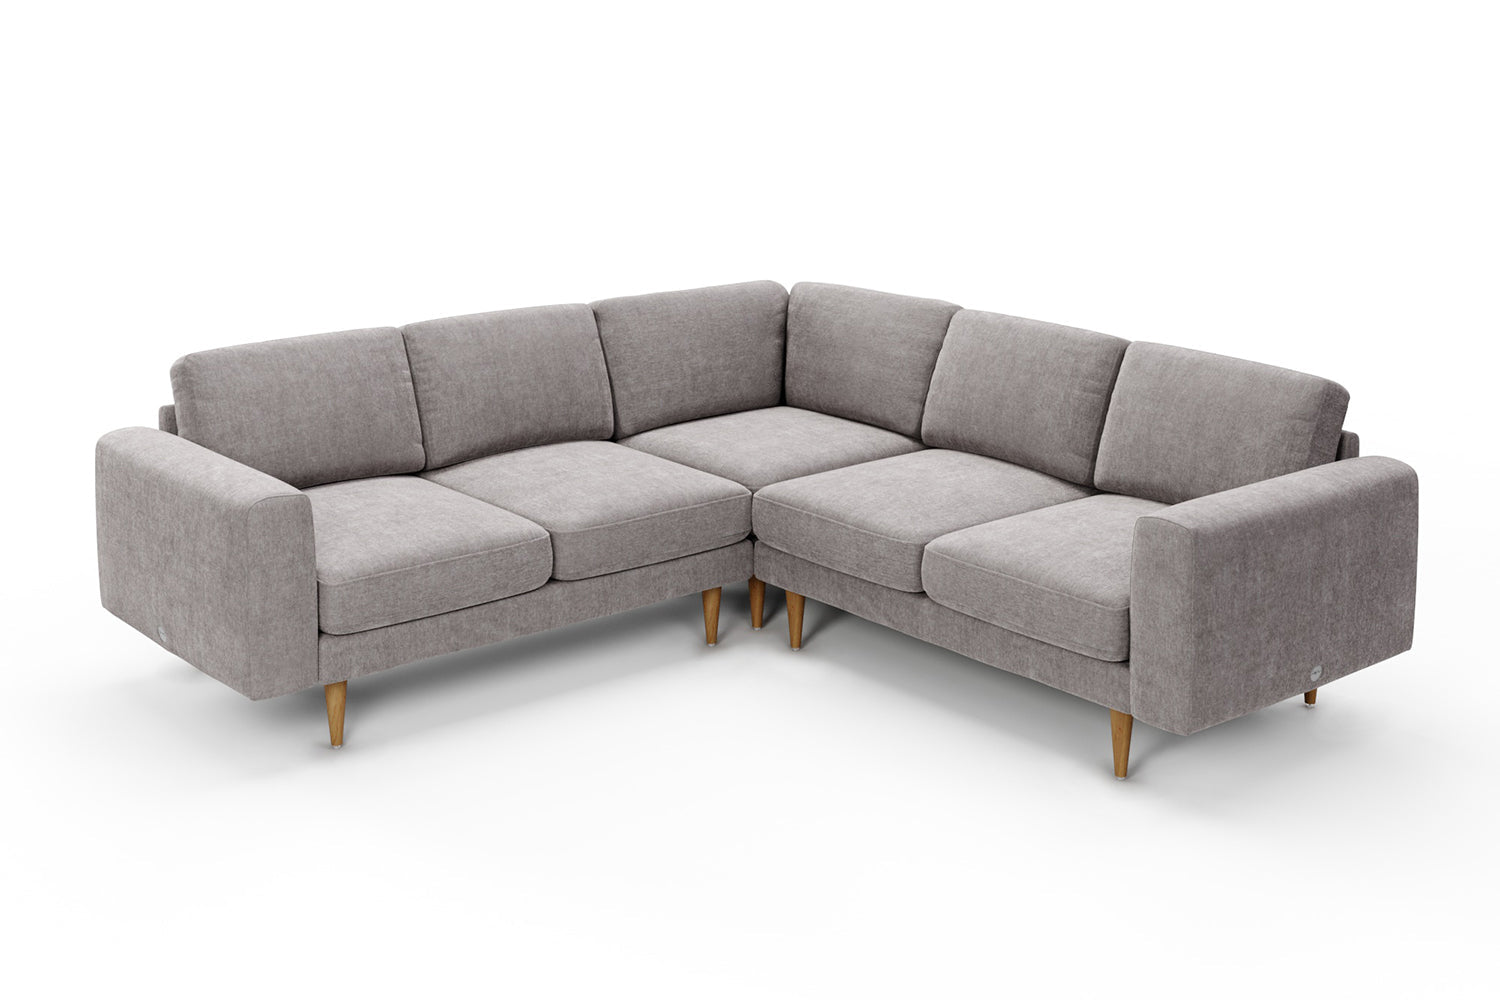 SNUG | The Big Chill Corner Sofa Medium in Mid Grey